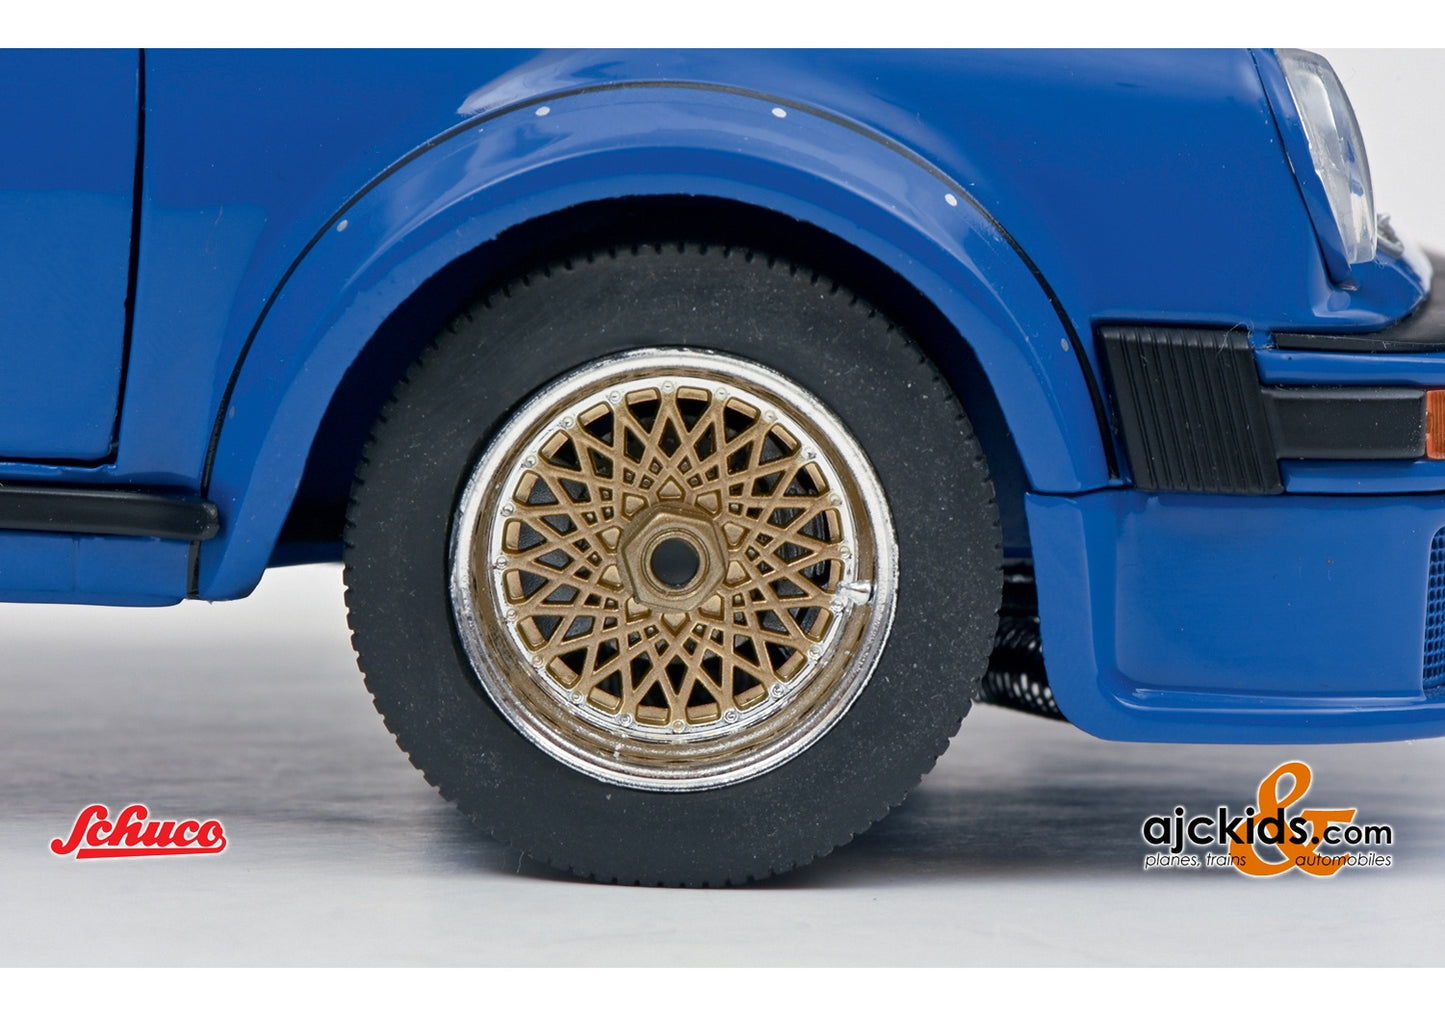 Schuco 450034100 - Porsche 934 RSR blue 1:18